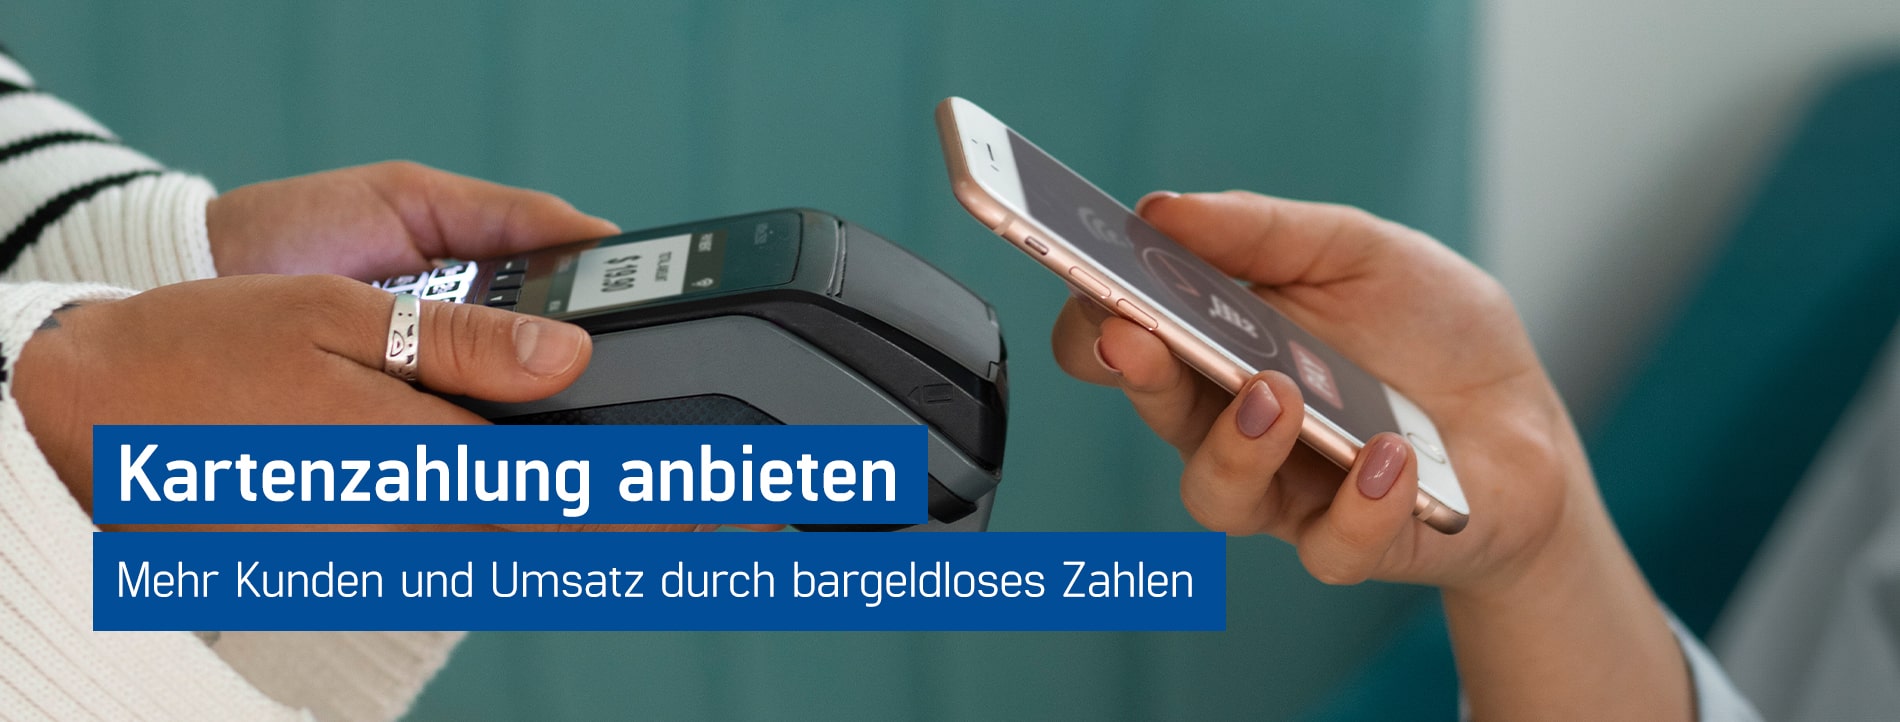 Kunde hält sein Smartphone an Kartenlesegerät um zu bezahlen, Kartenzahlung anbieten und Umsatz steigern mit GastroSoft